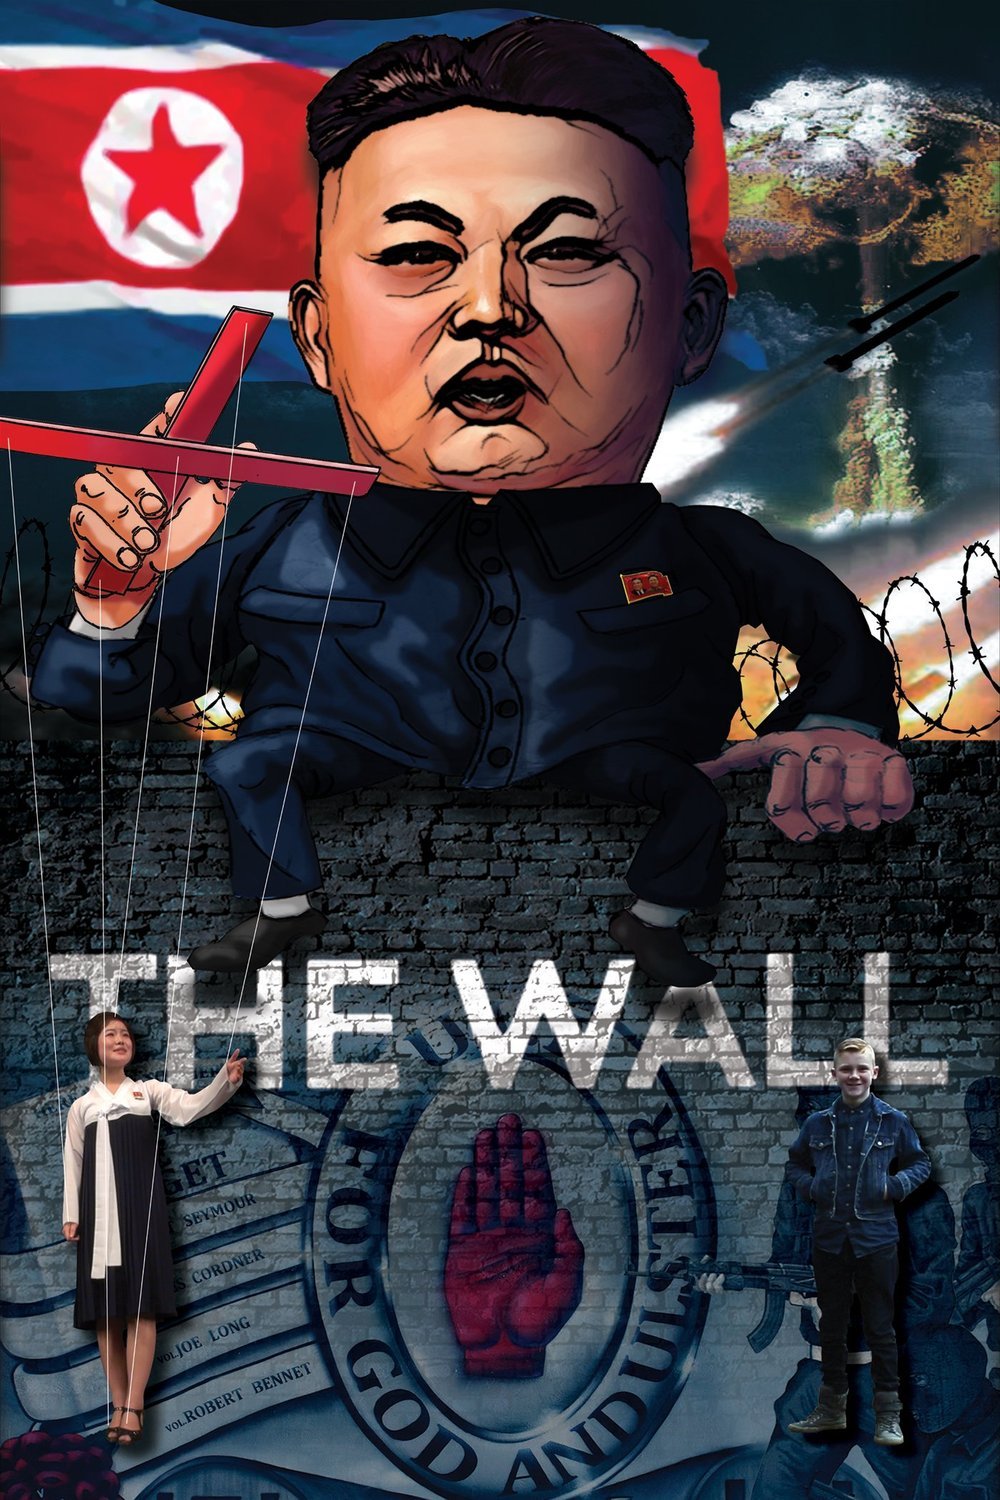 L'affiche du film The Wall